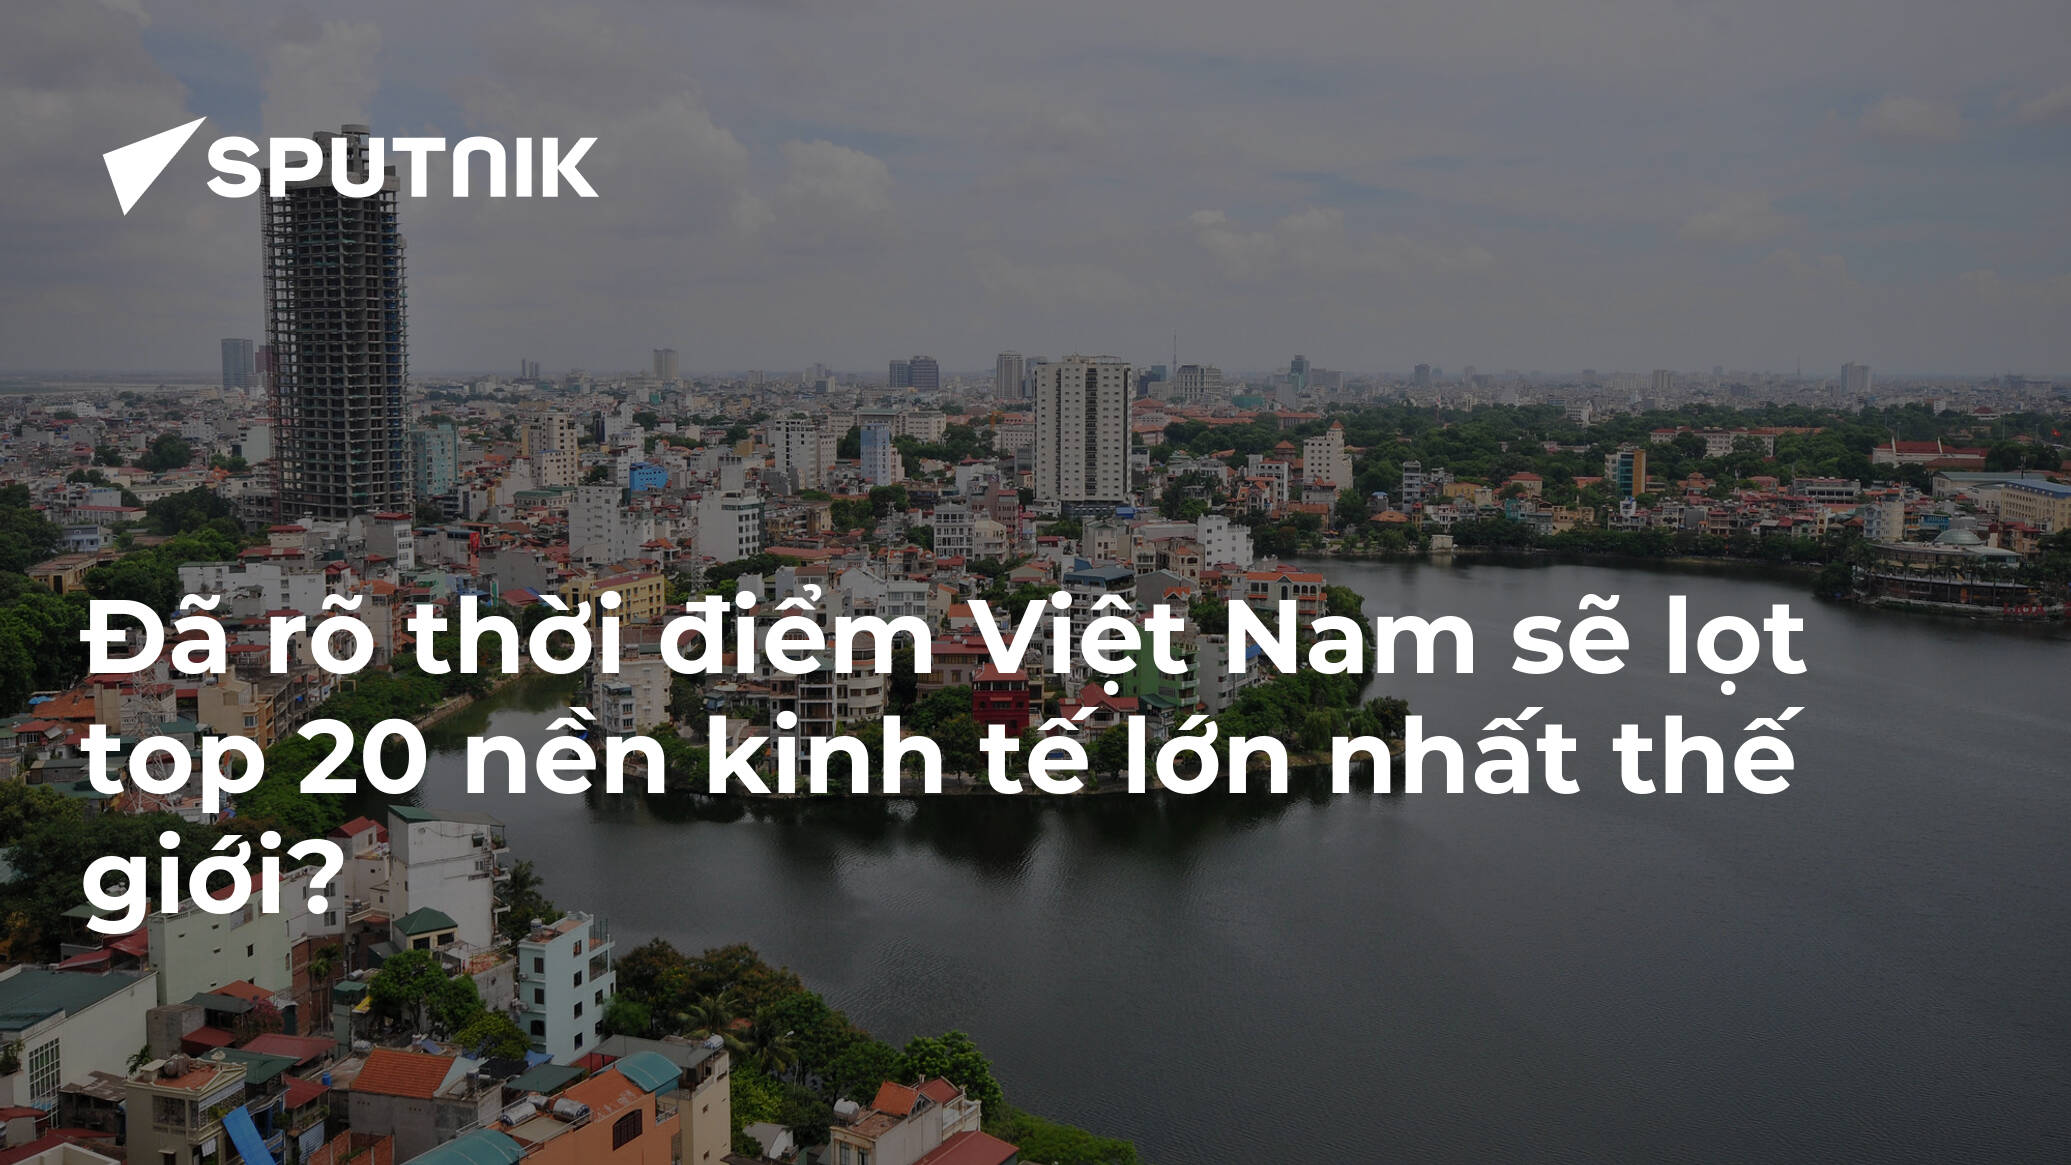 Đã rõ thời điểm Việt Nam sẽ lọt top 20 nền kinh tế lớn nhất thế giới?